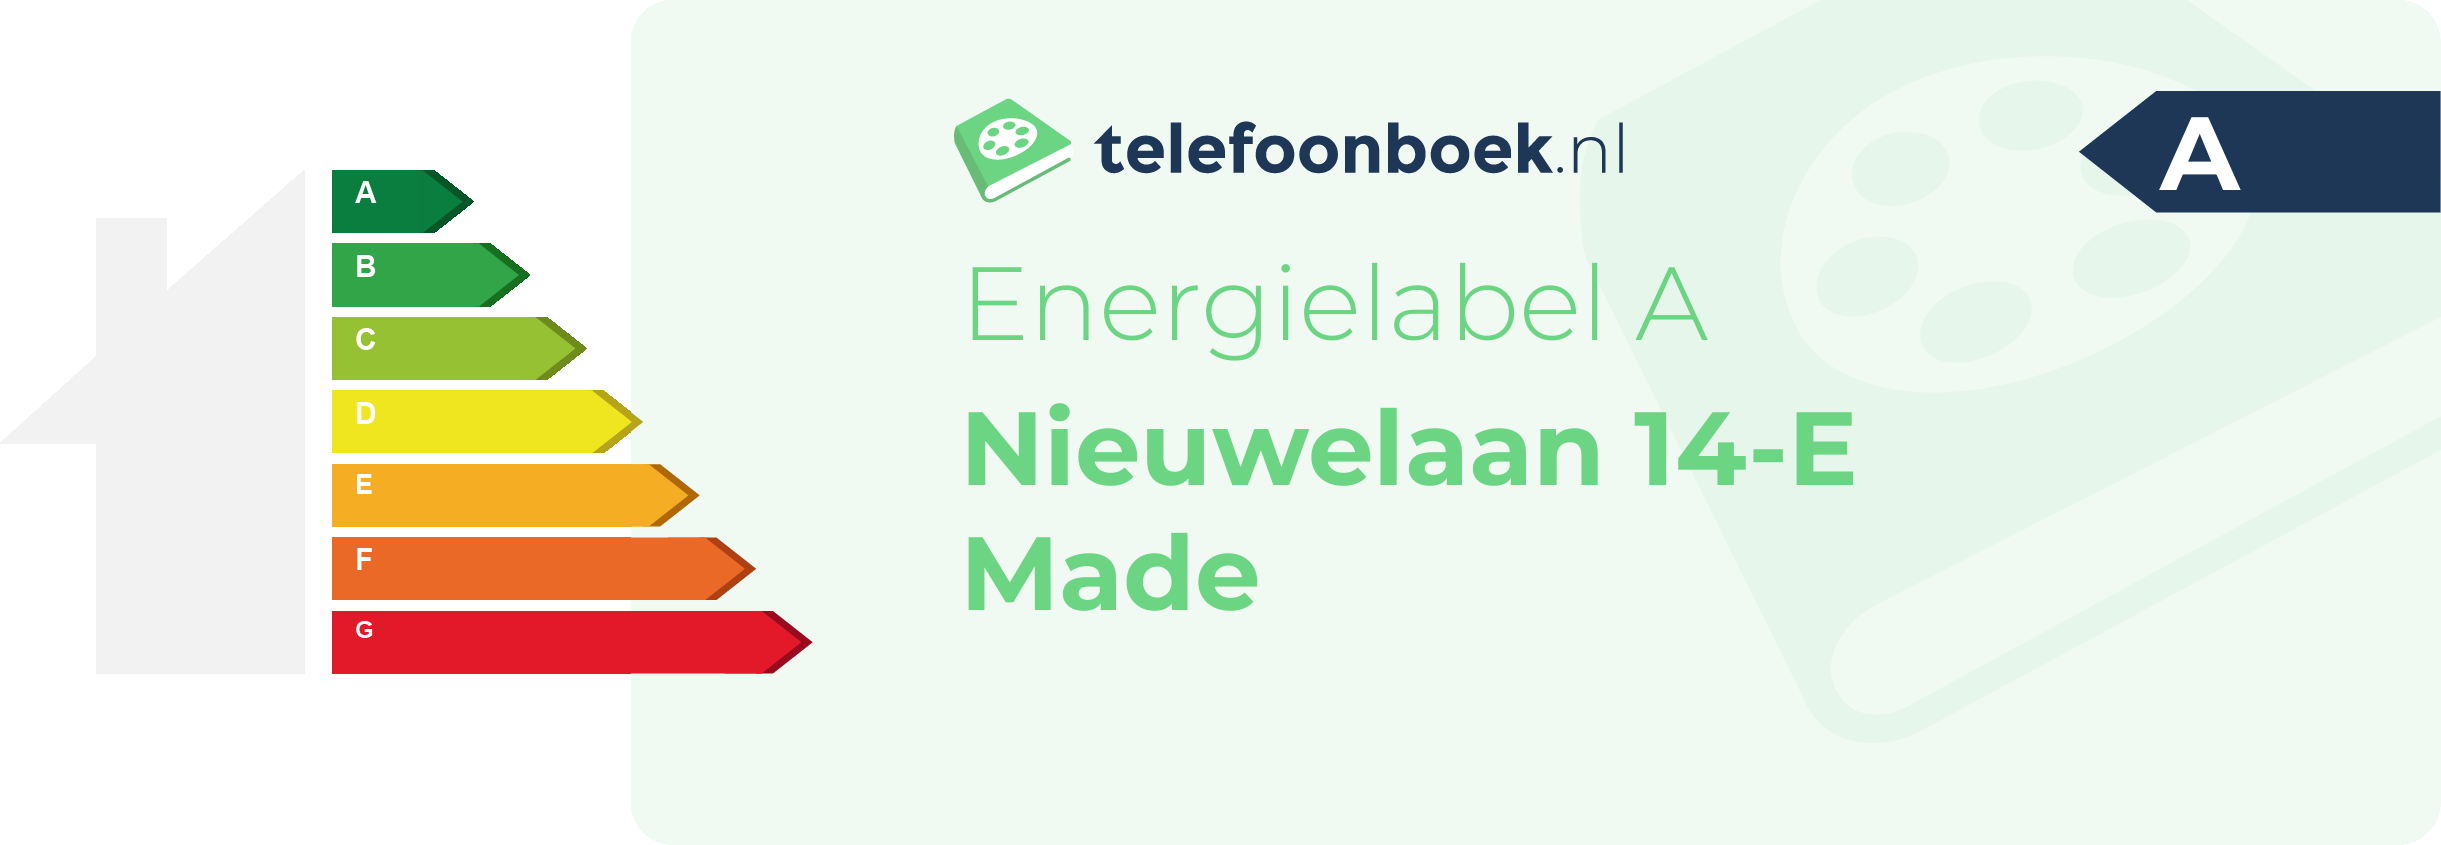 Energielabel Nieuwelaan 14-E Made